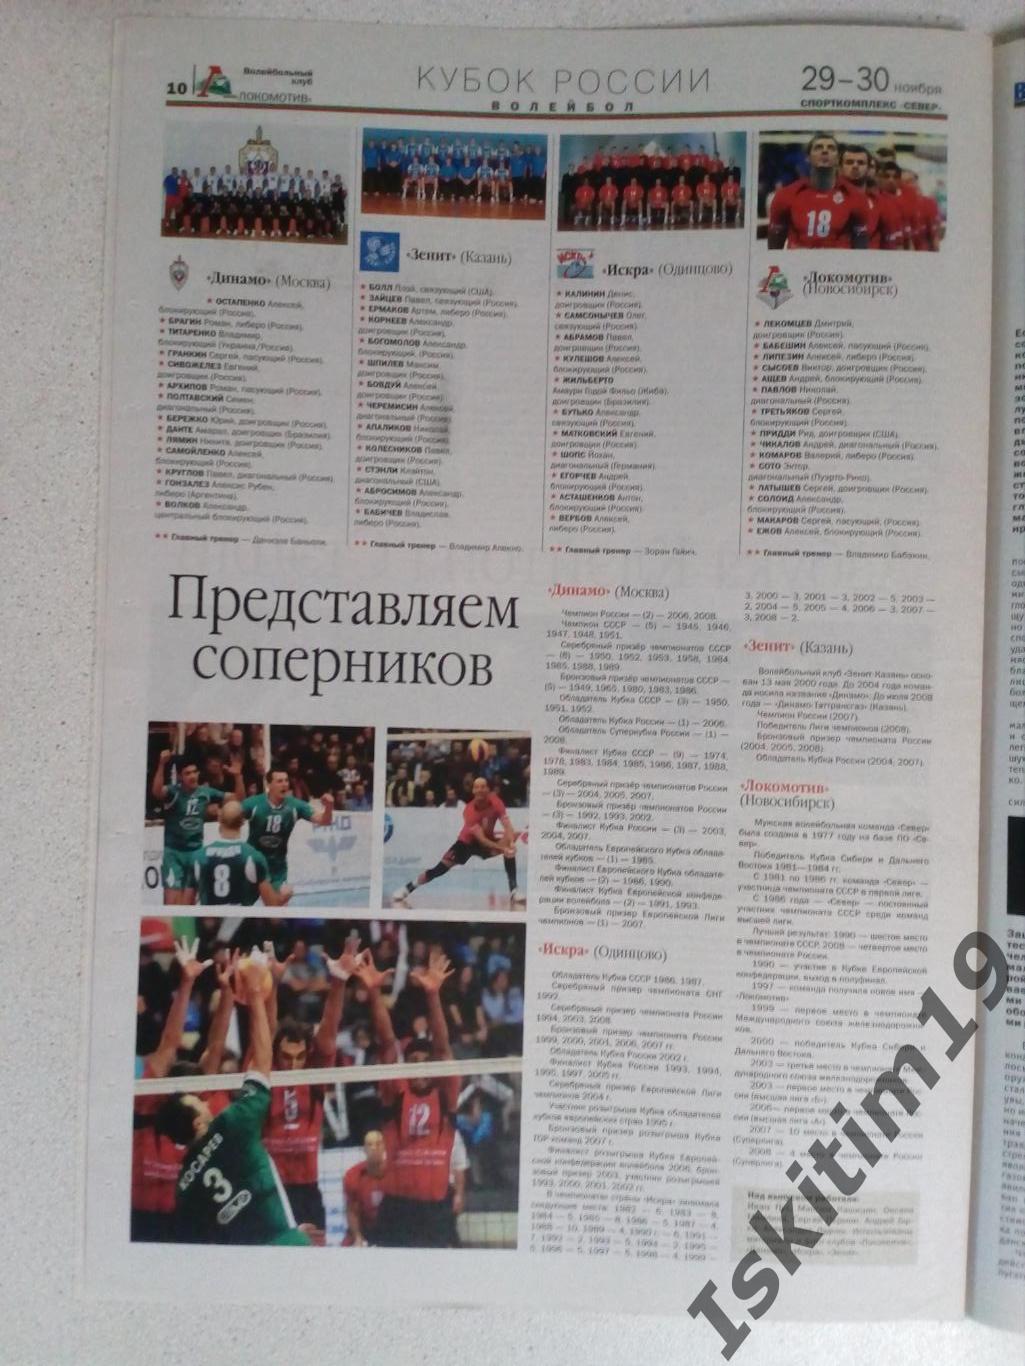 Вечерний Новосибирск 29.11.2008 № 229. Финал четырех кубка России по волейболу 2